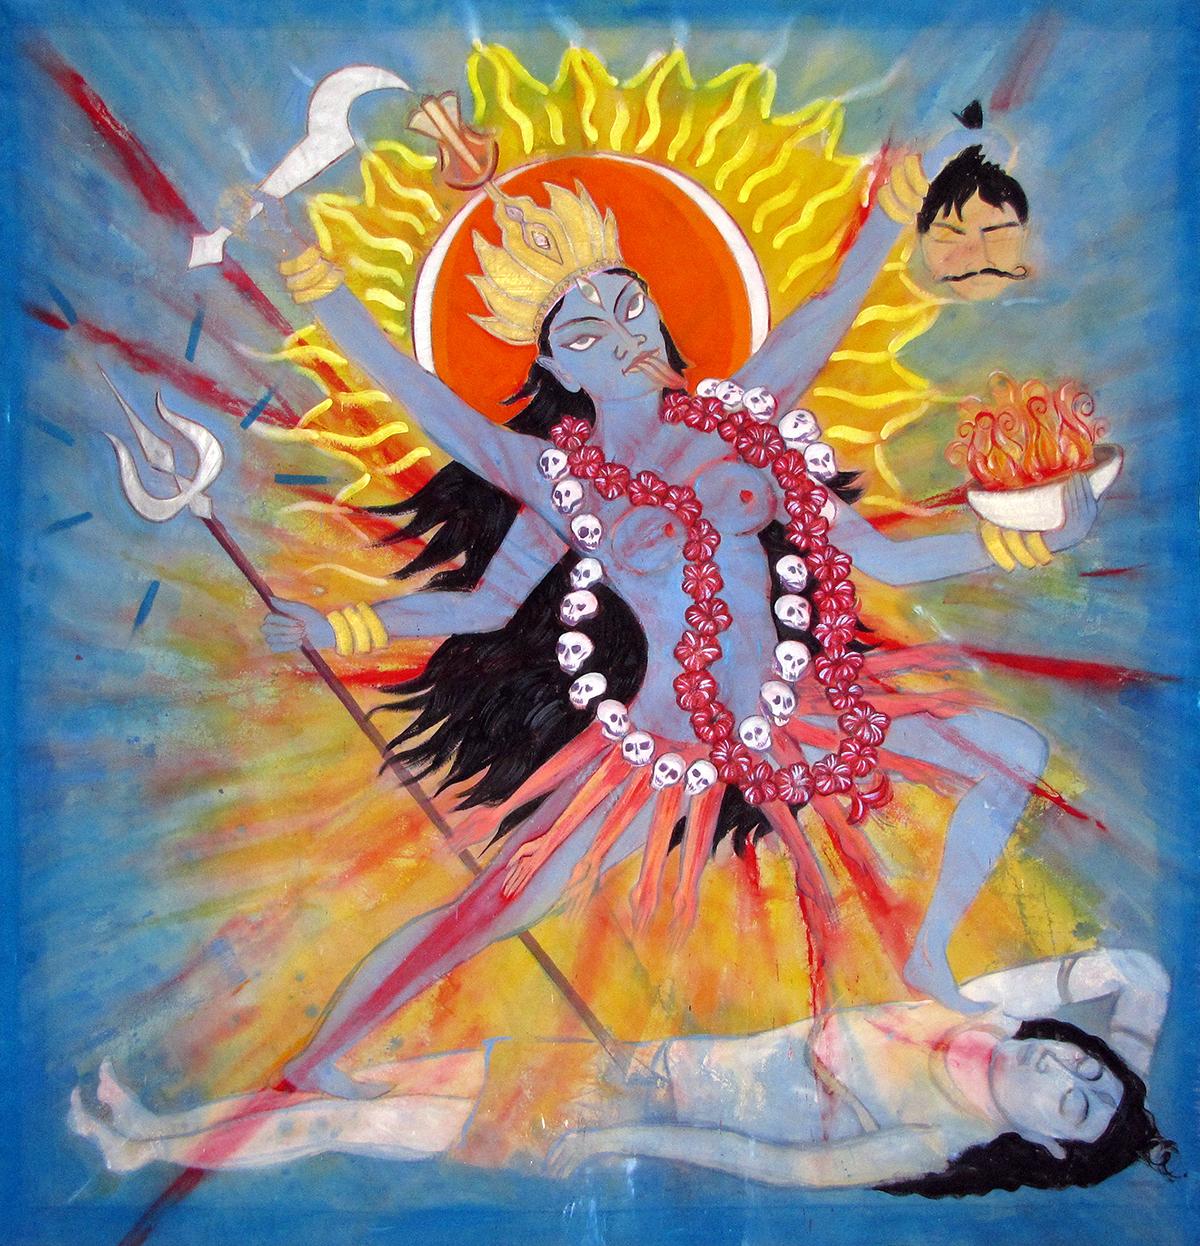 Janet Morgan Figurative Painting – Kali, farbenfroher, kühner, spiritueller, östlicher Einfluss, Feuer, Göttin